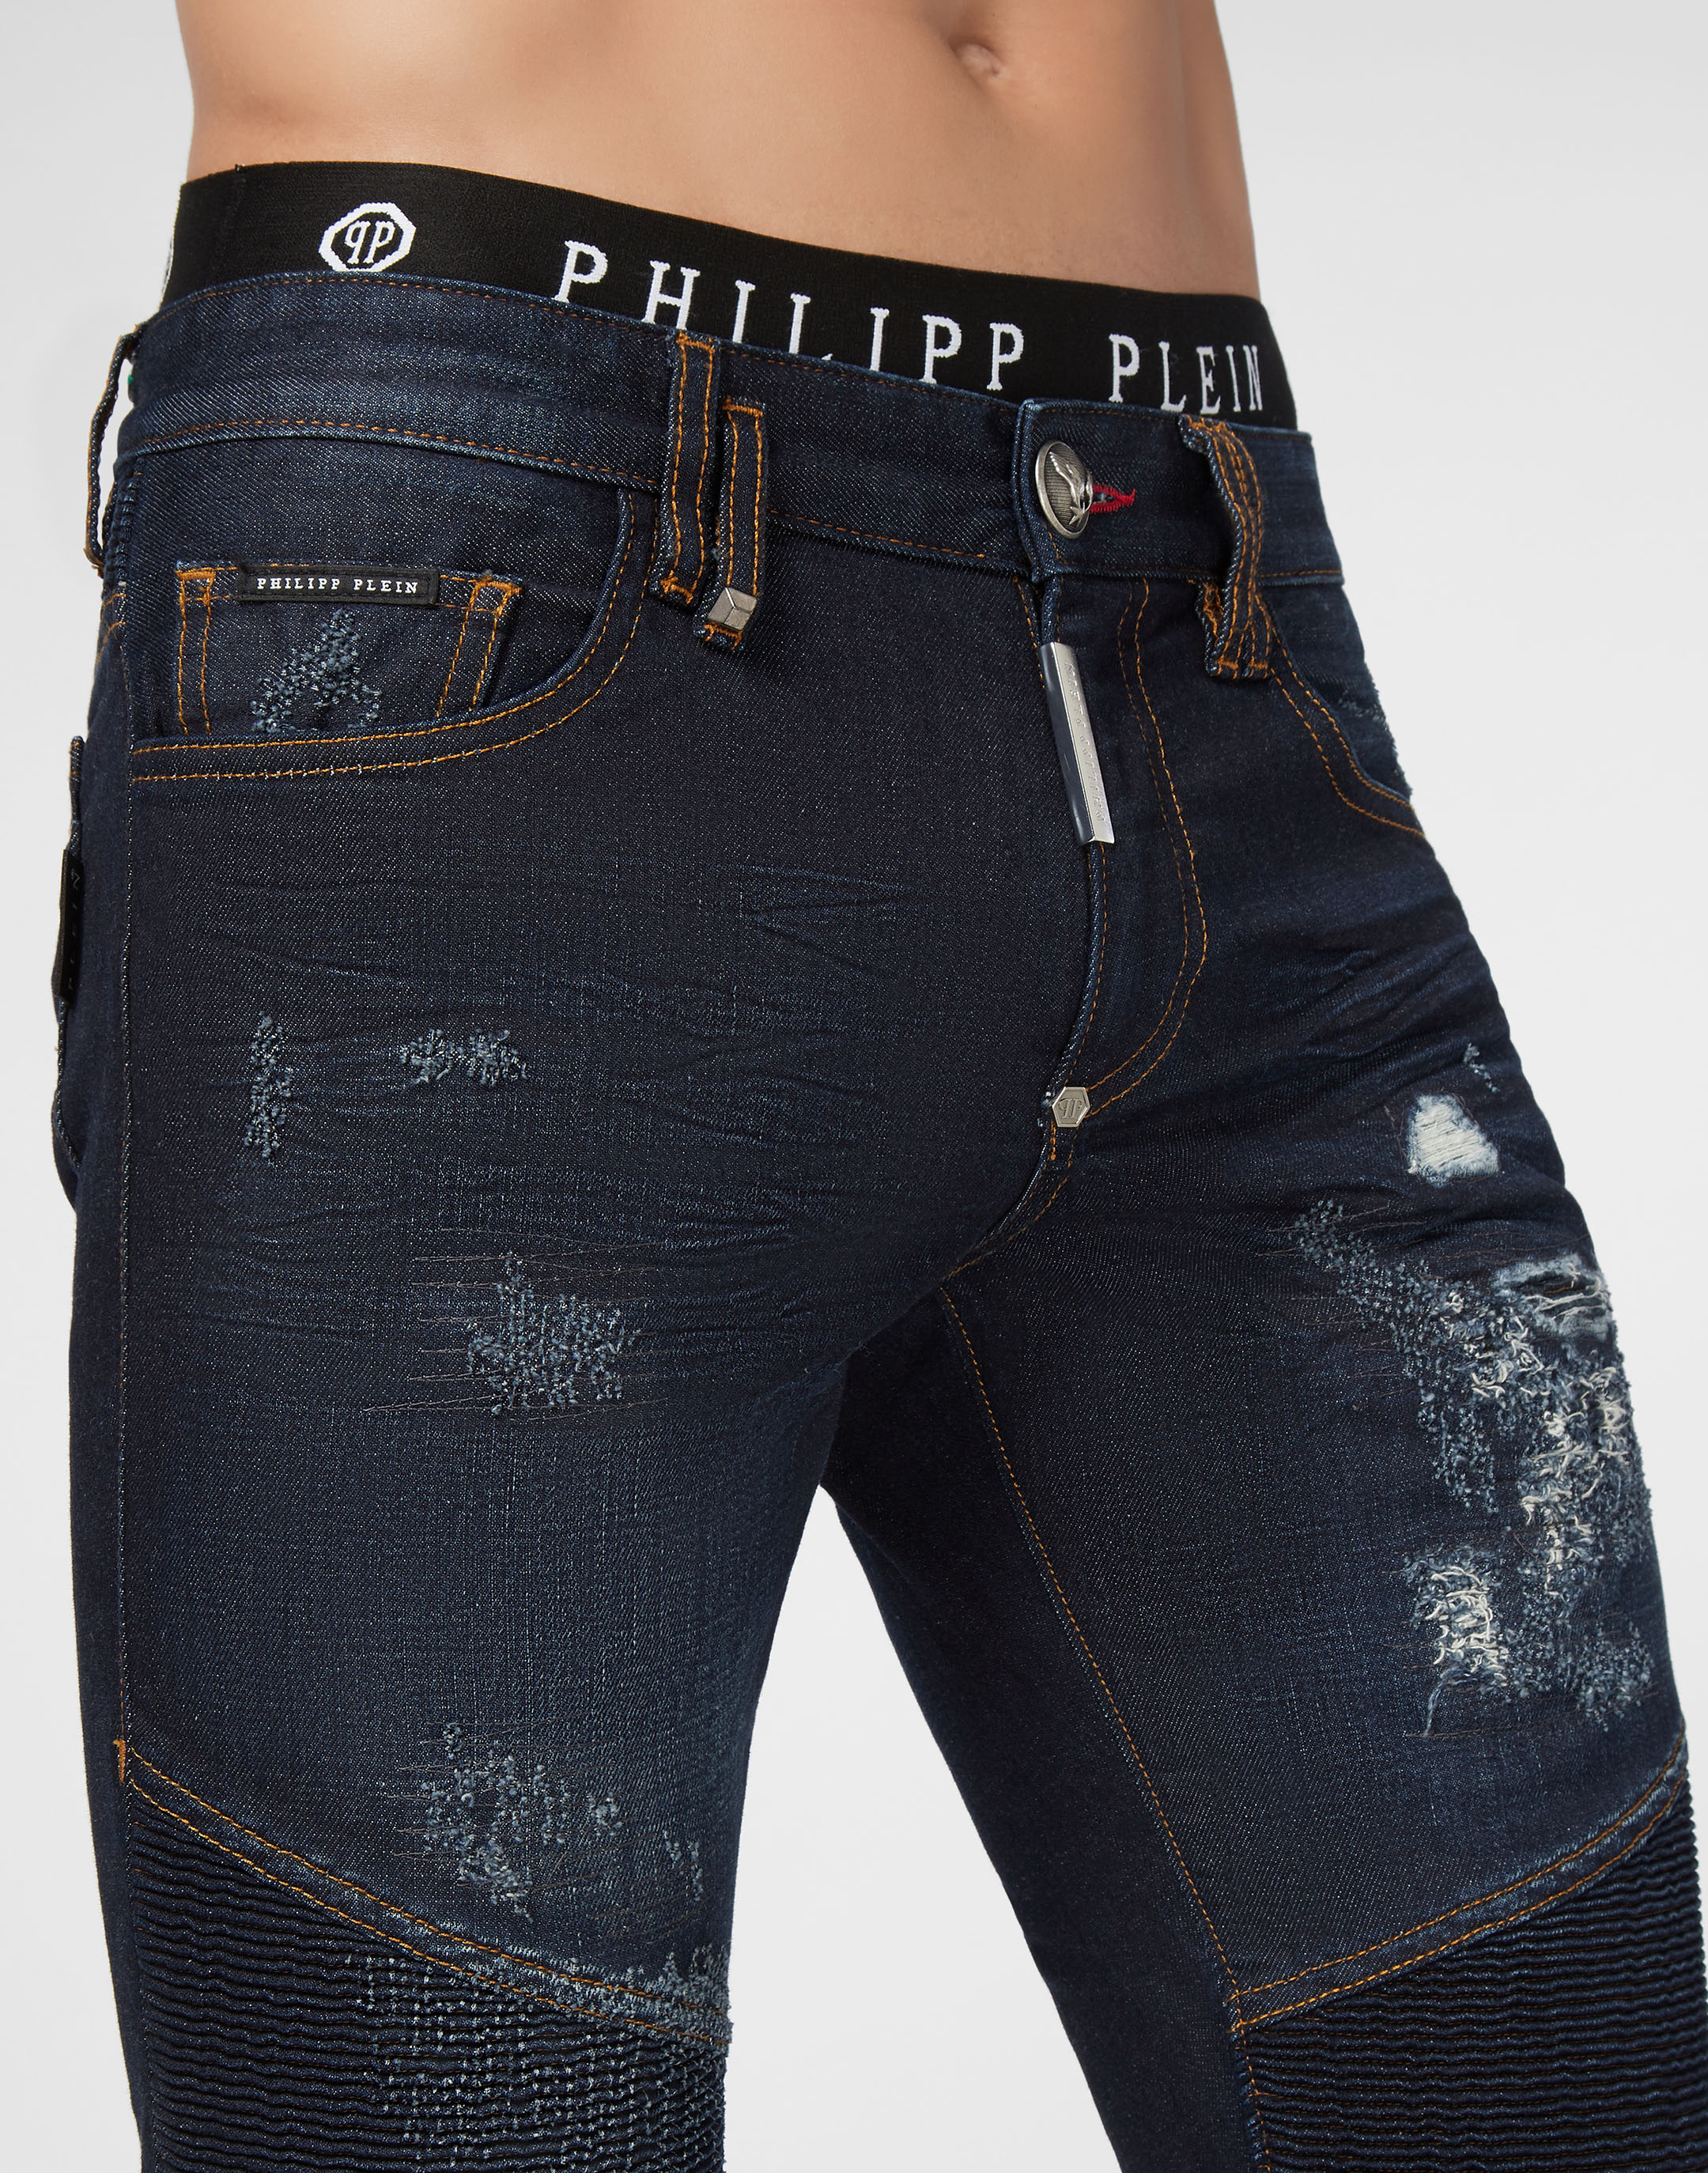 philipp plein biker jeans